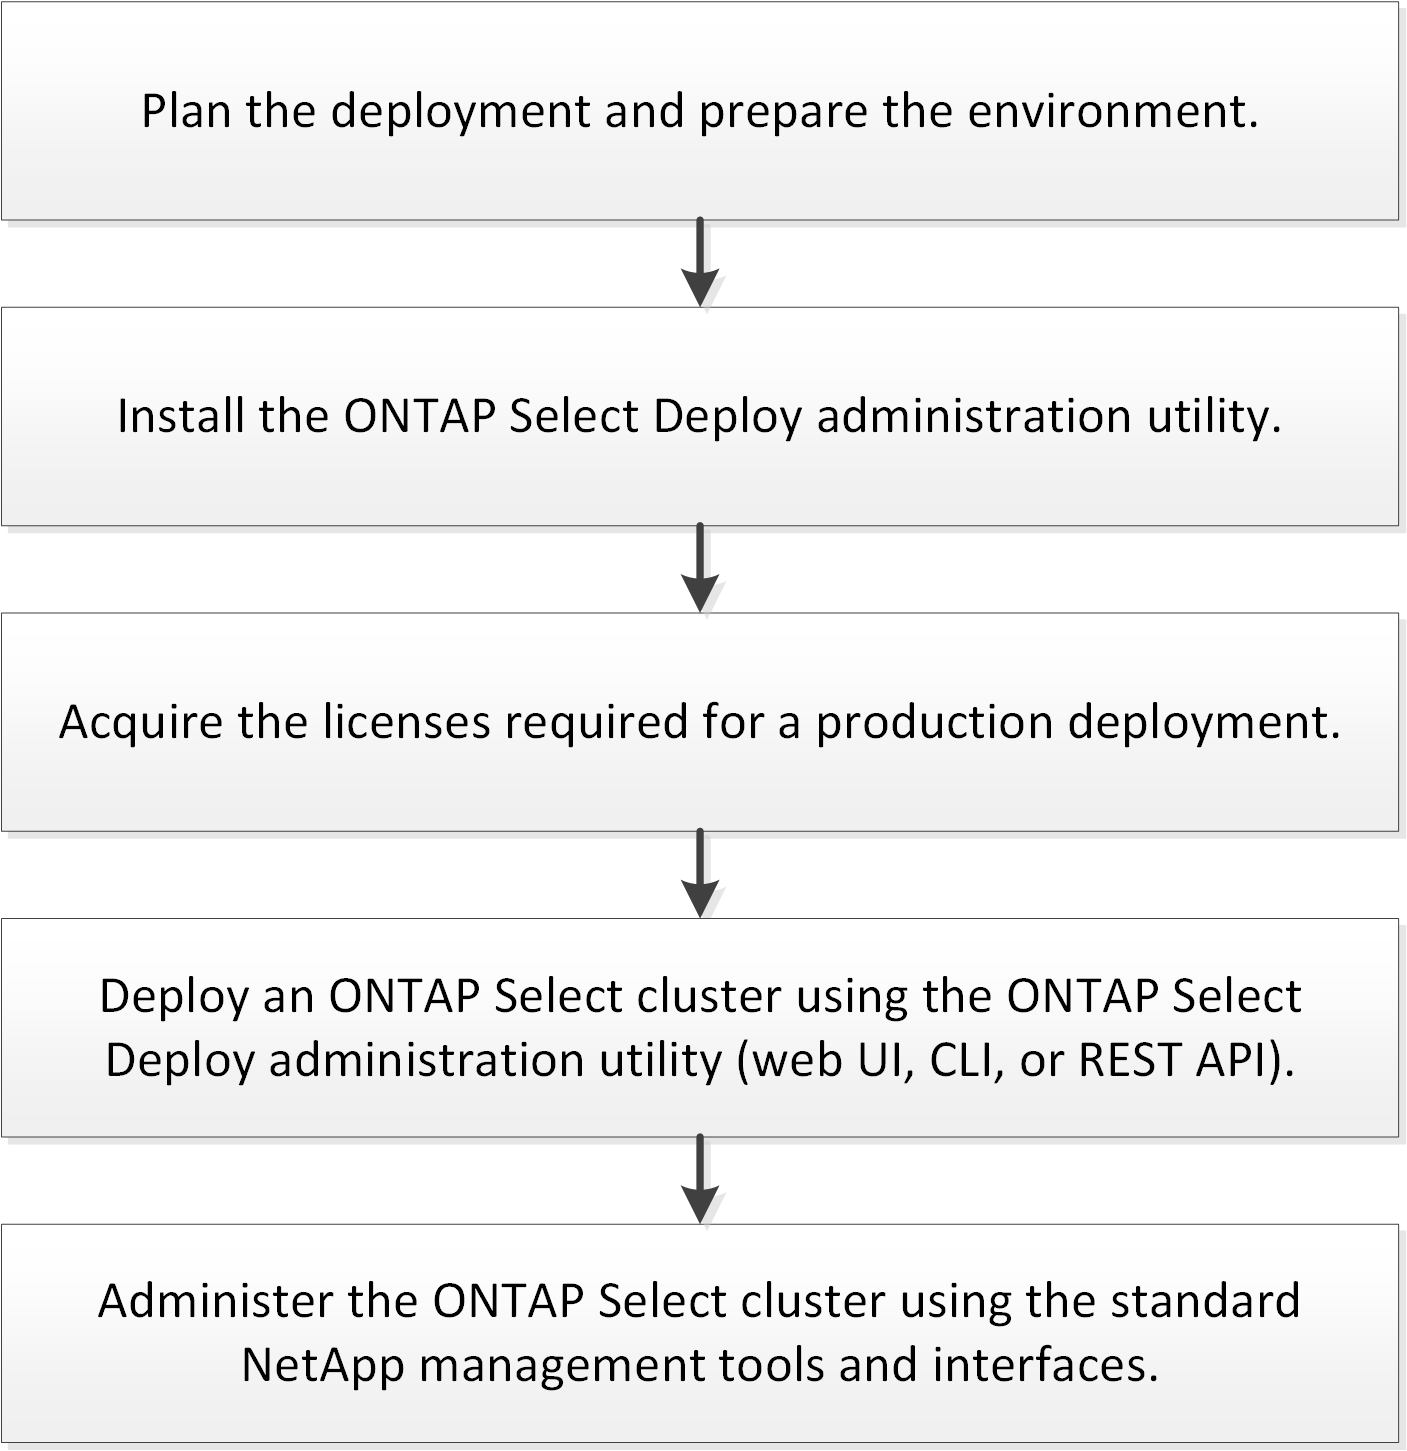 Describe todo el flujo de trabajo necesario para implementar un clúster de ONTAP Select.